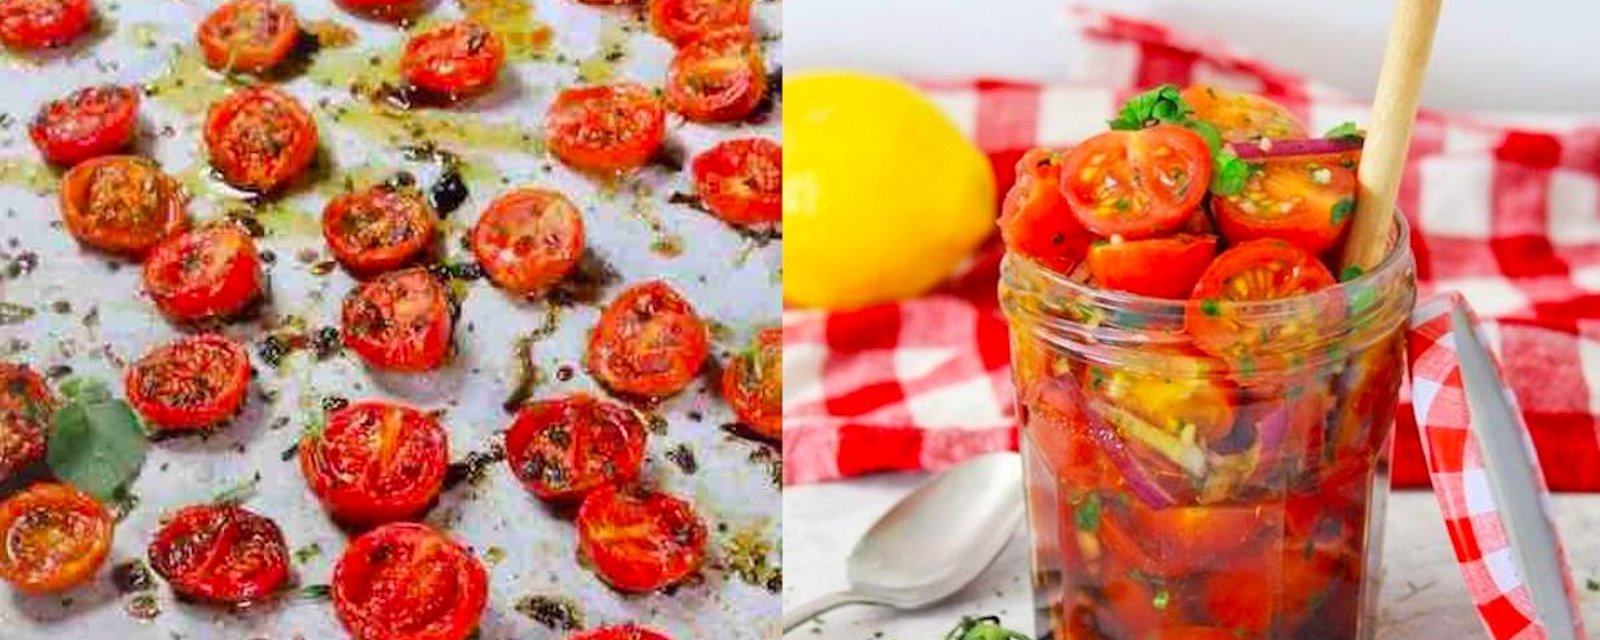 Trop de tomates cerises? Voici deux succulentes solutions!